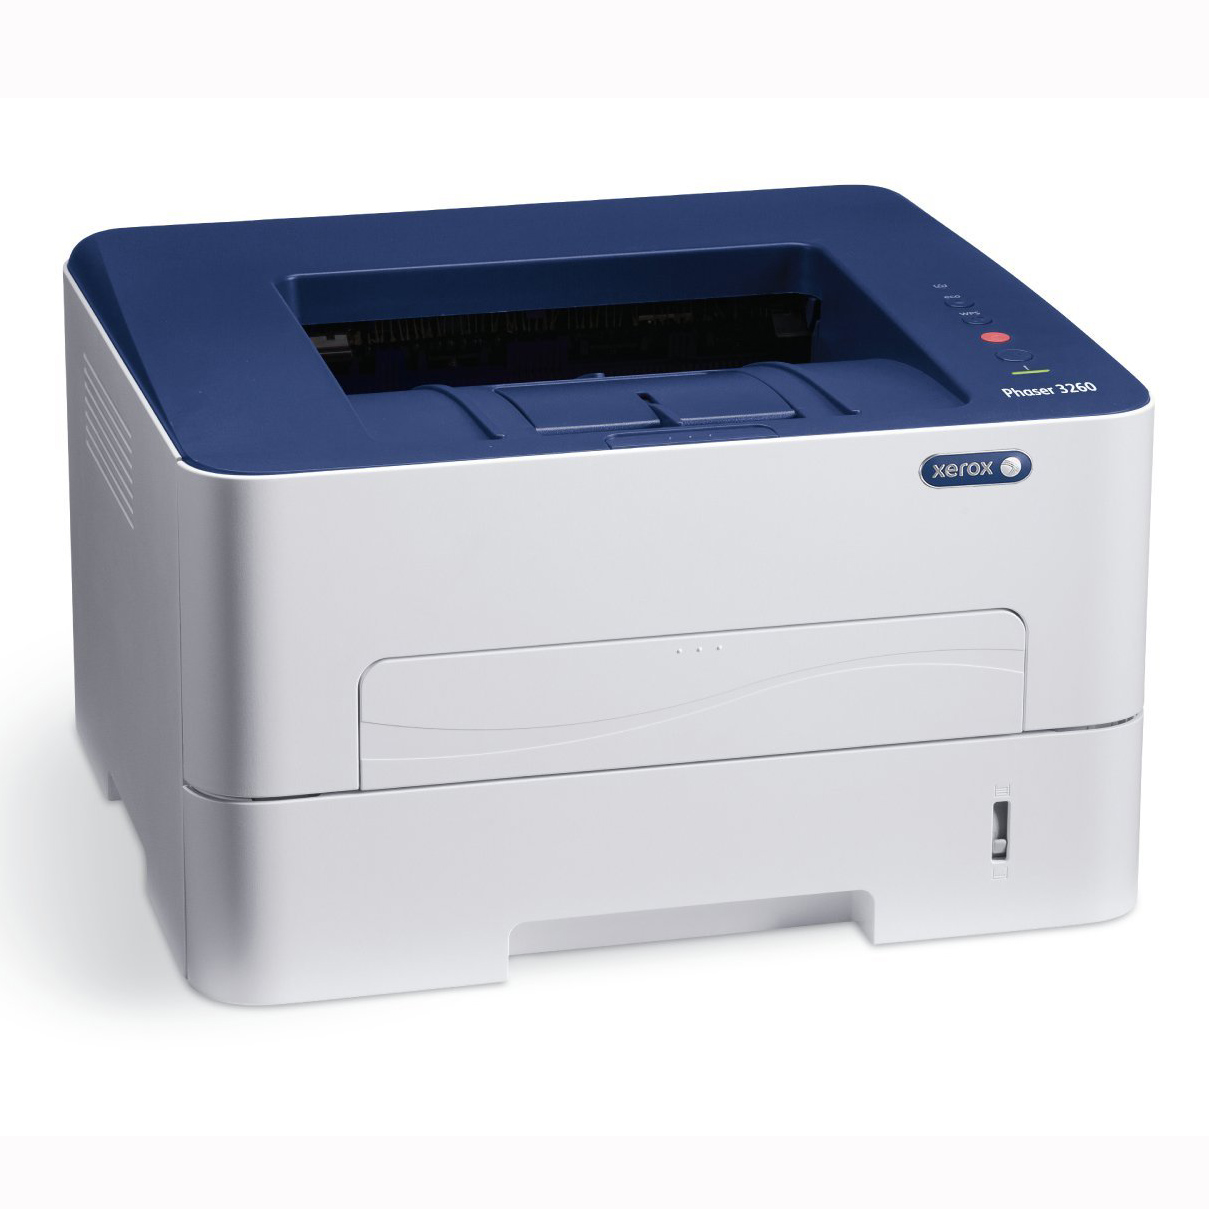 Купить принтер xerox 3020. Xerox Phaser 3116, ч/б, a4. Принтер Xerox b210 (b210dni).